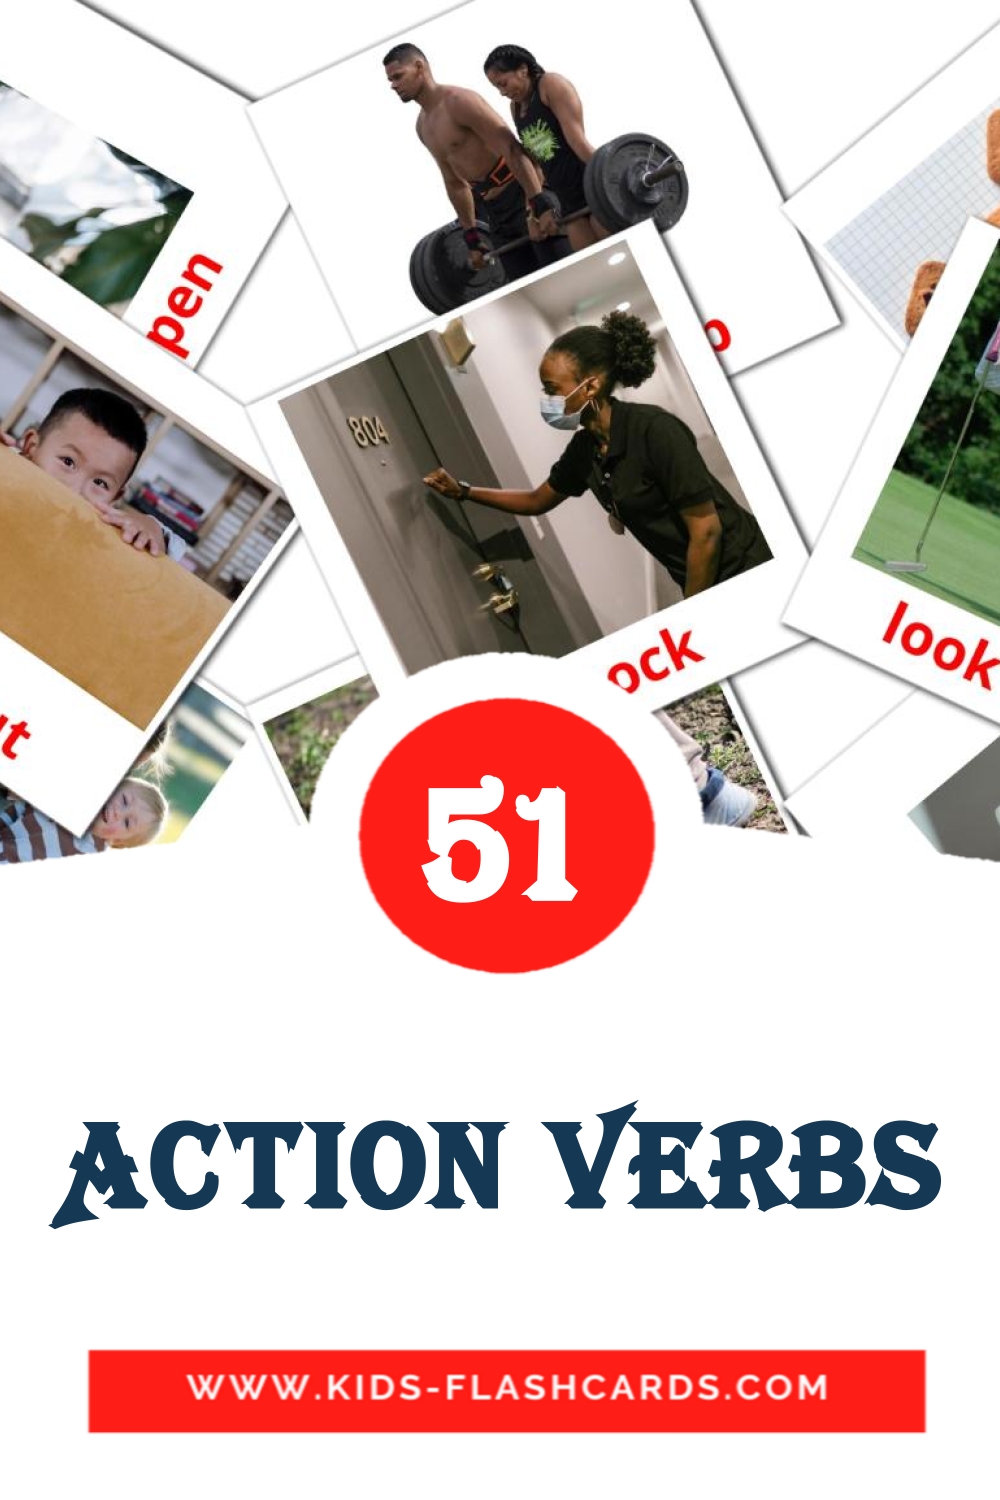 Action verbs на английском для Детского Сада (54 карточки)